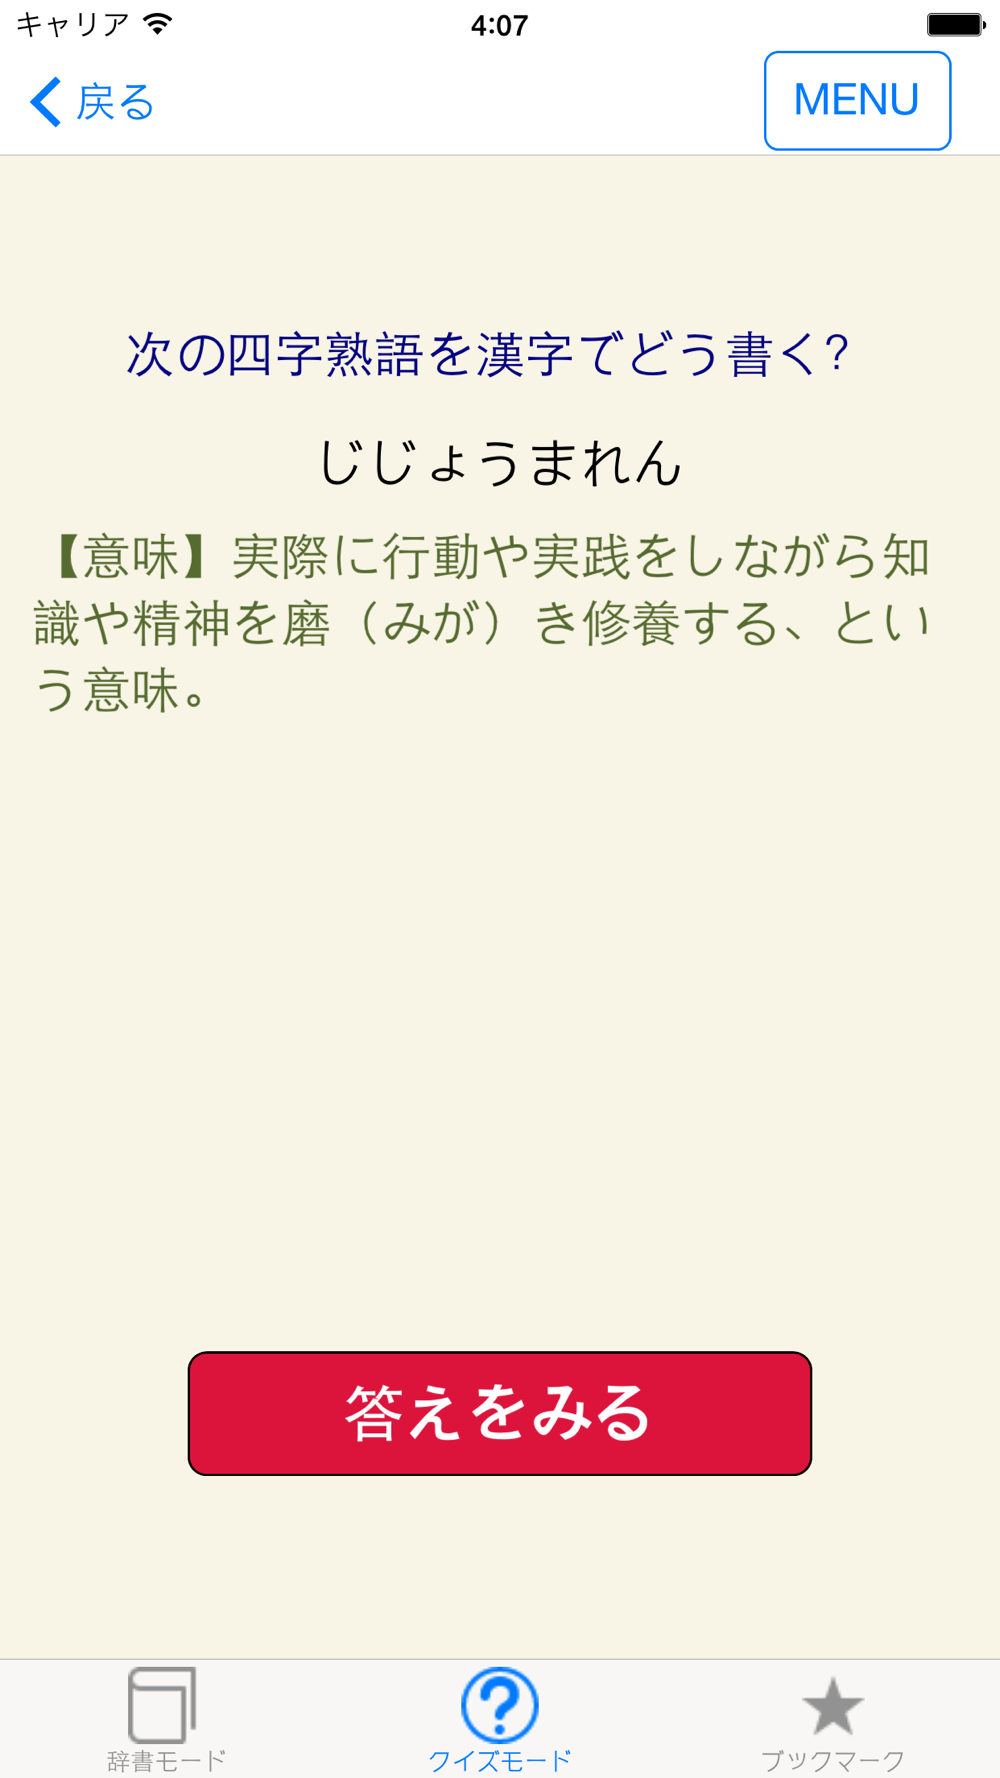 ことわざ 四字熟語 学習小辞典 Free Download App For Iphone Steprimo Com